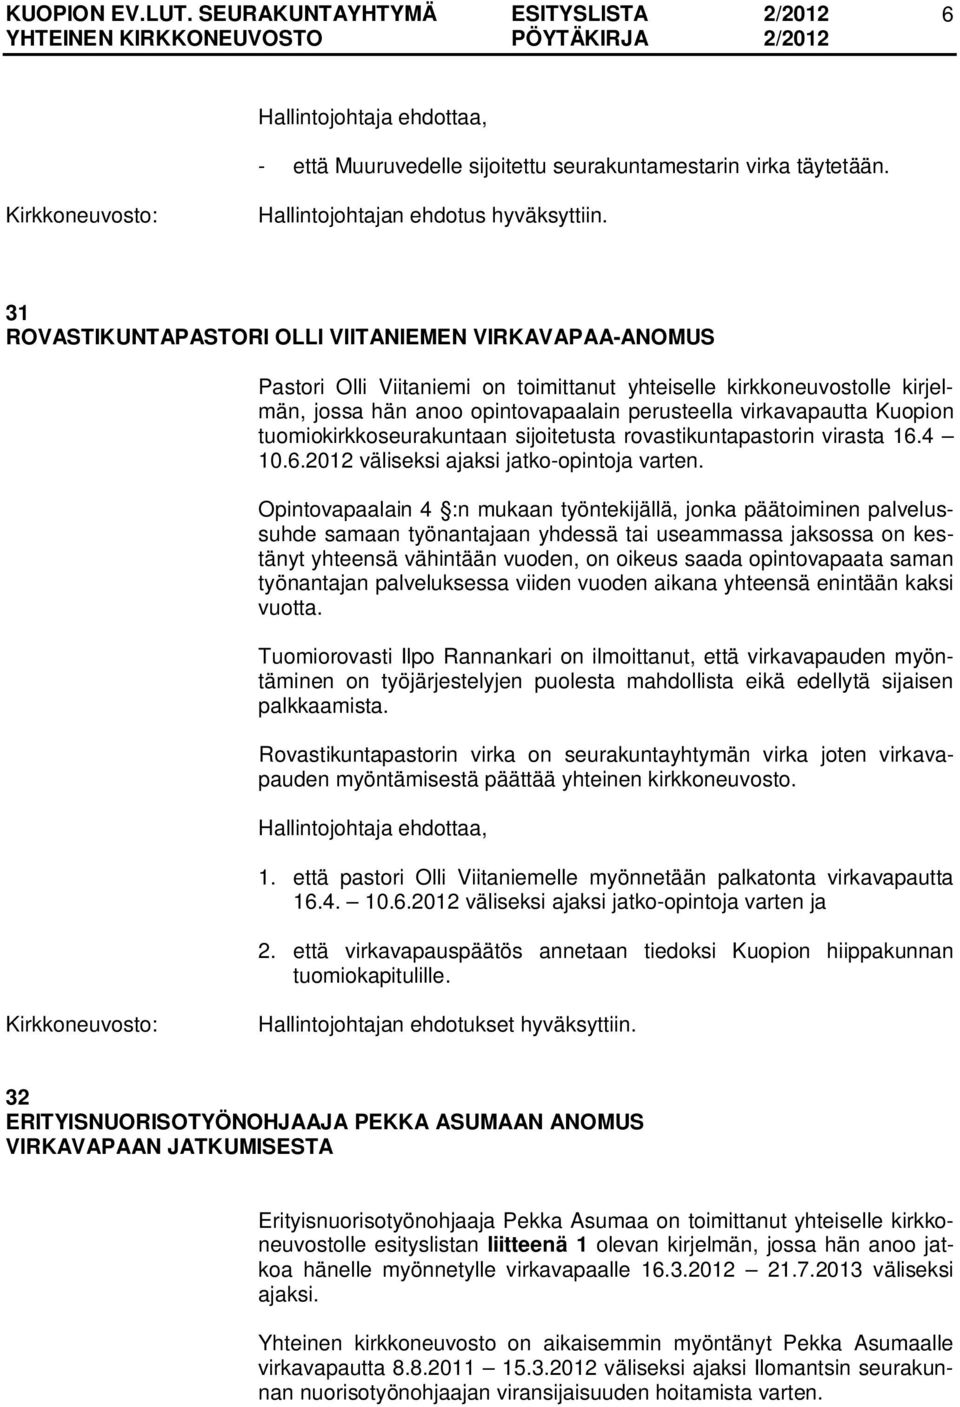 Kuopion tuomiokirkkoseurakuntaan sijoitetusta rovastikuntapastorin virasta 16.4 10.6.2012 väliseksi ajaksi jatko-opintoja varten.